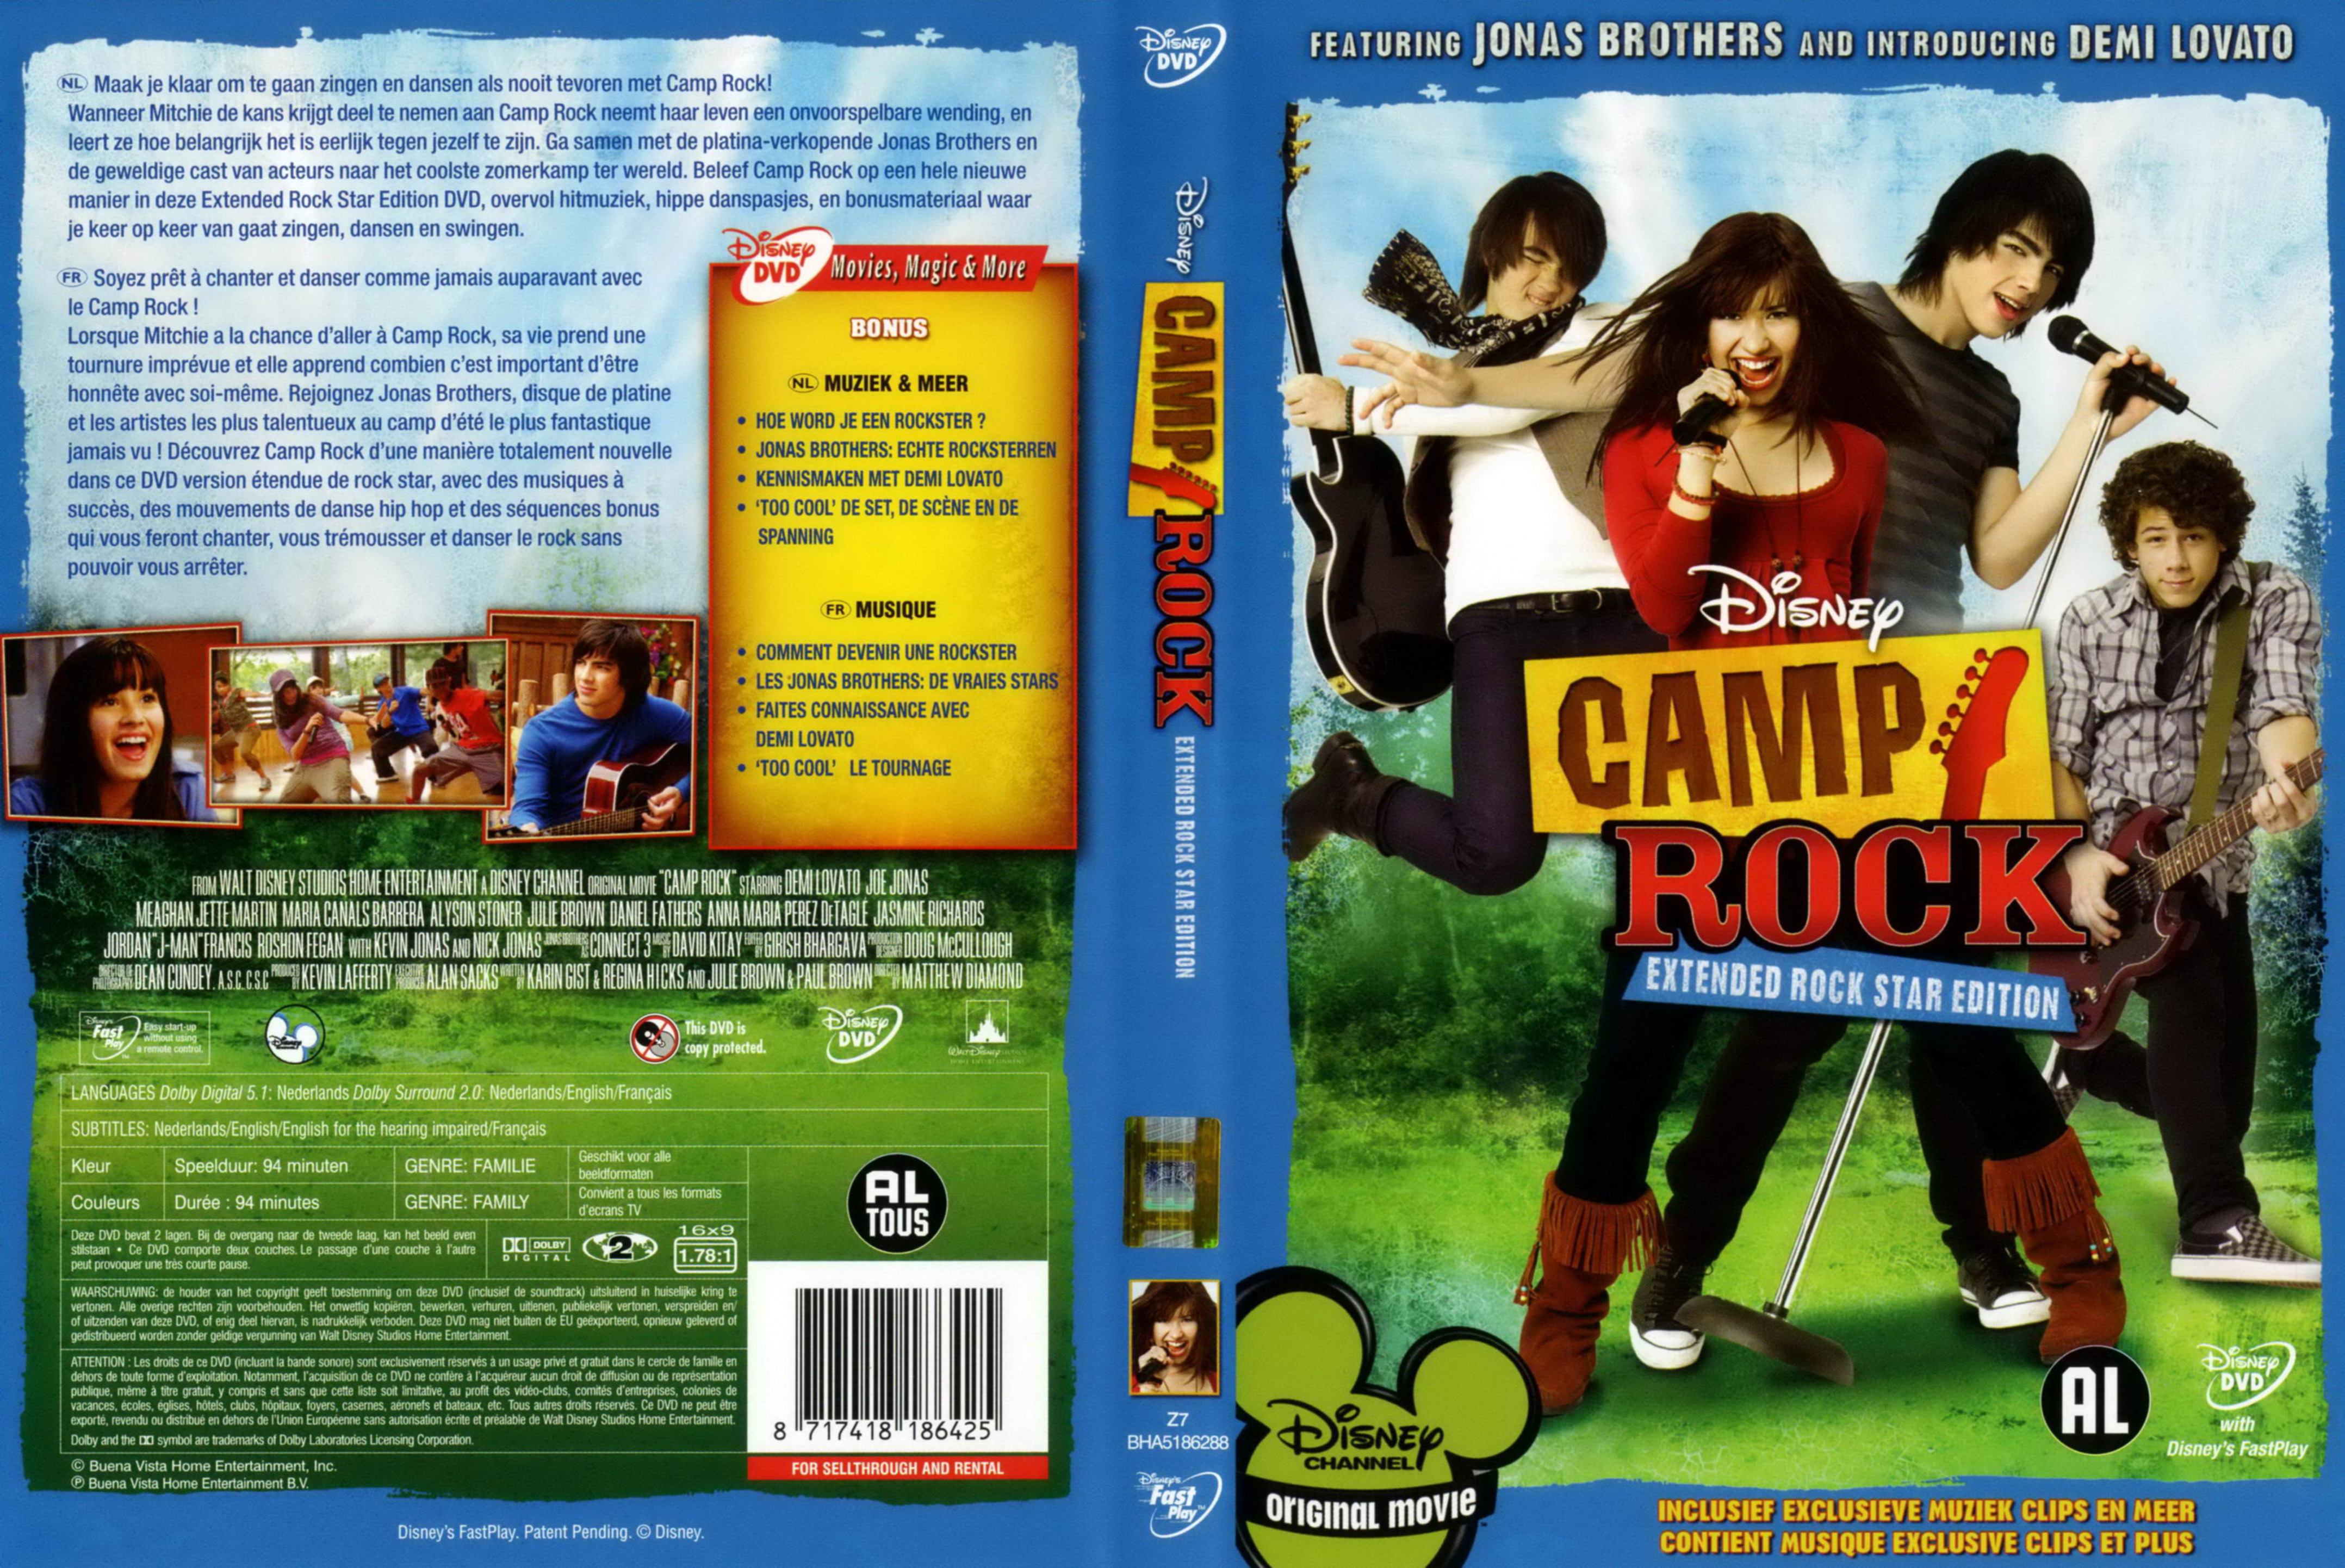 Jaquette DVD Camp rock v2